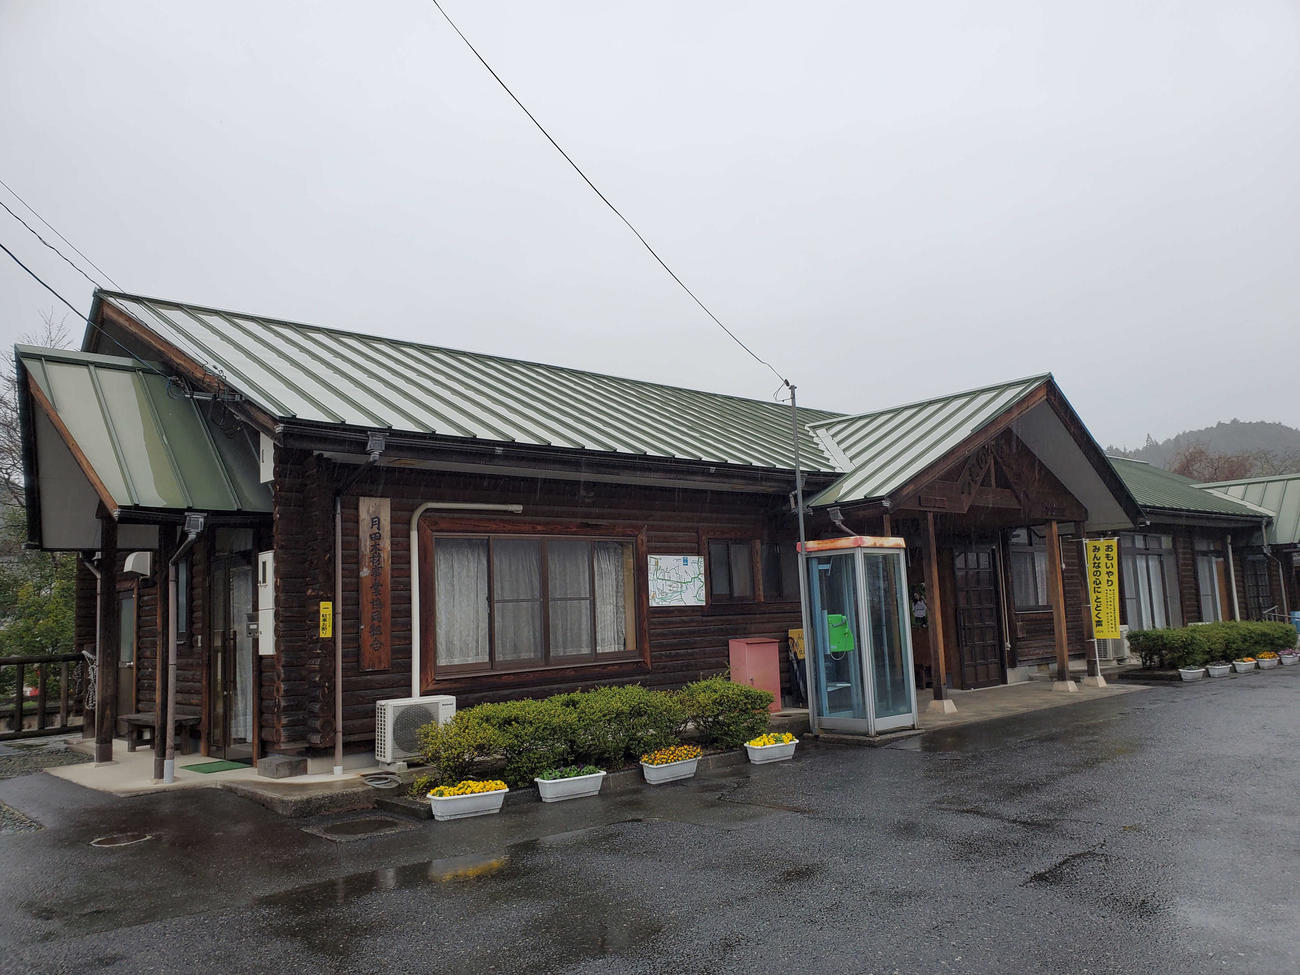 〈5〉ログハウス風の駅舎を持つ月田駅